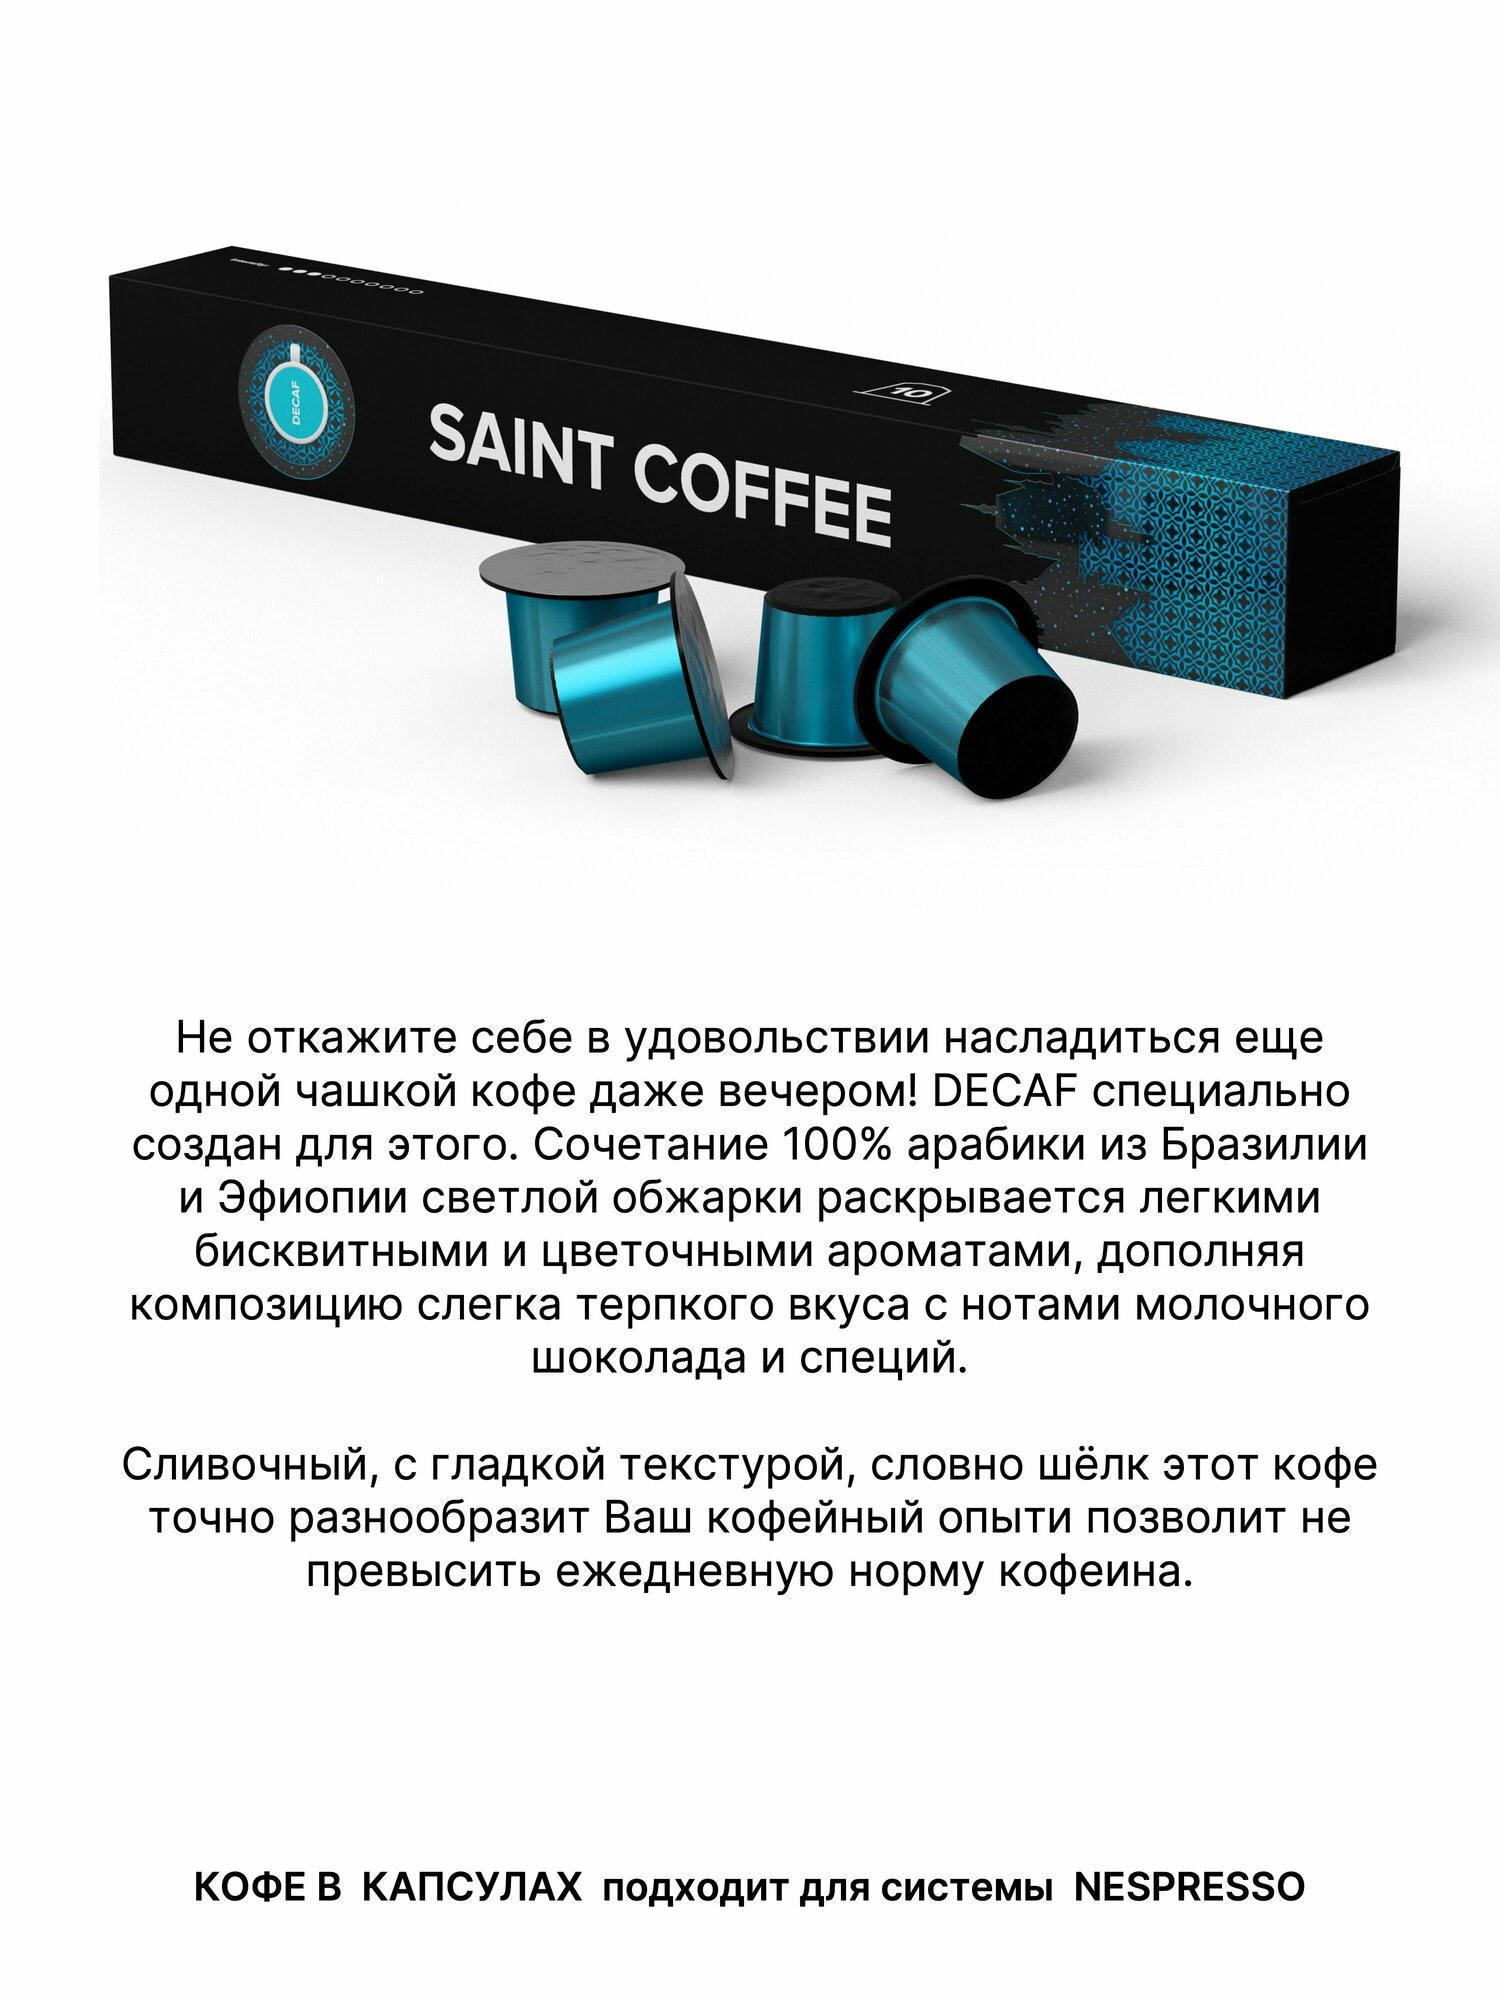 Кофе в капсулах SAINT COFFEE DECAF для кофемашин системы Nespresso - фотография № 12